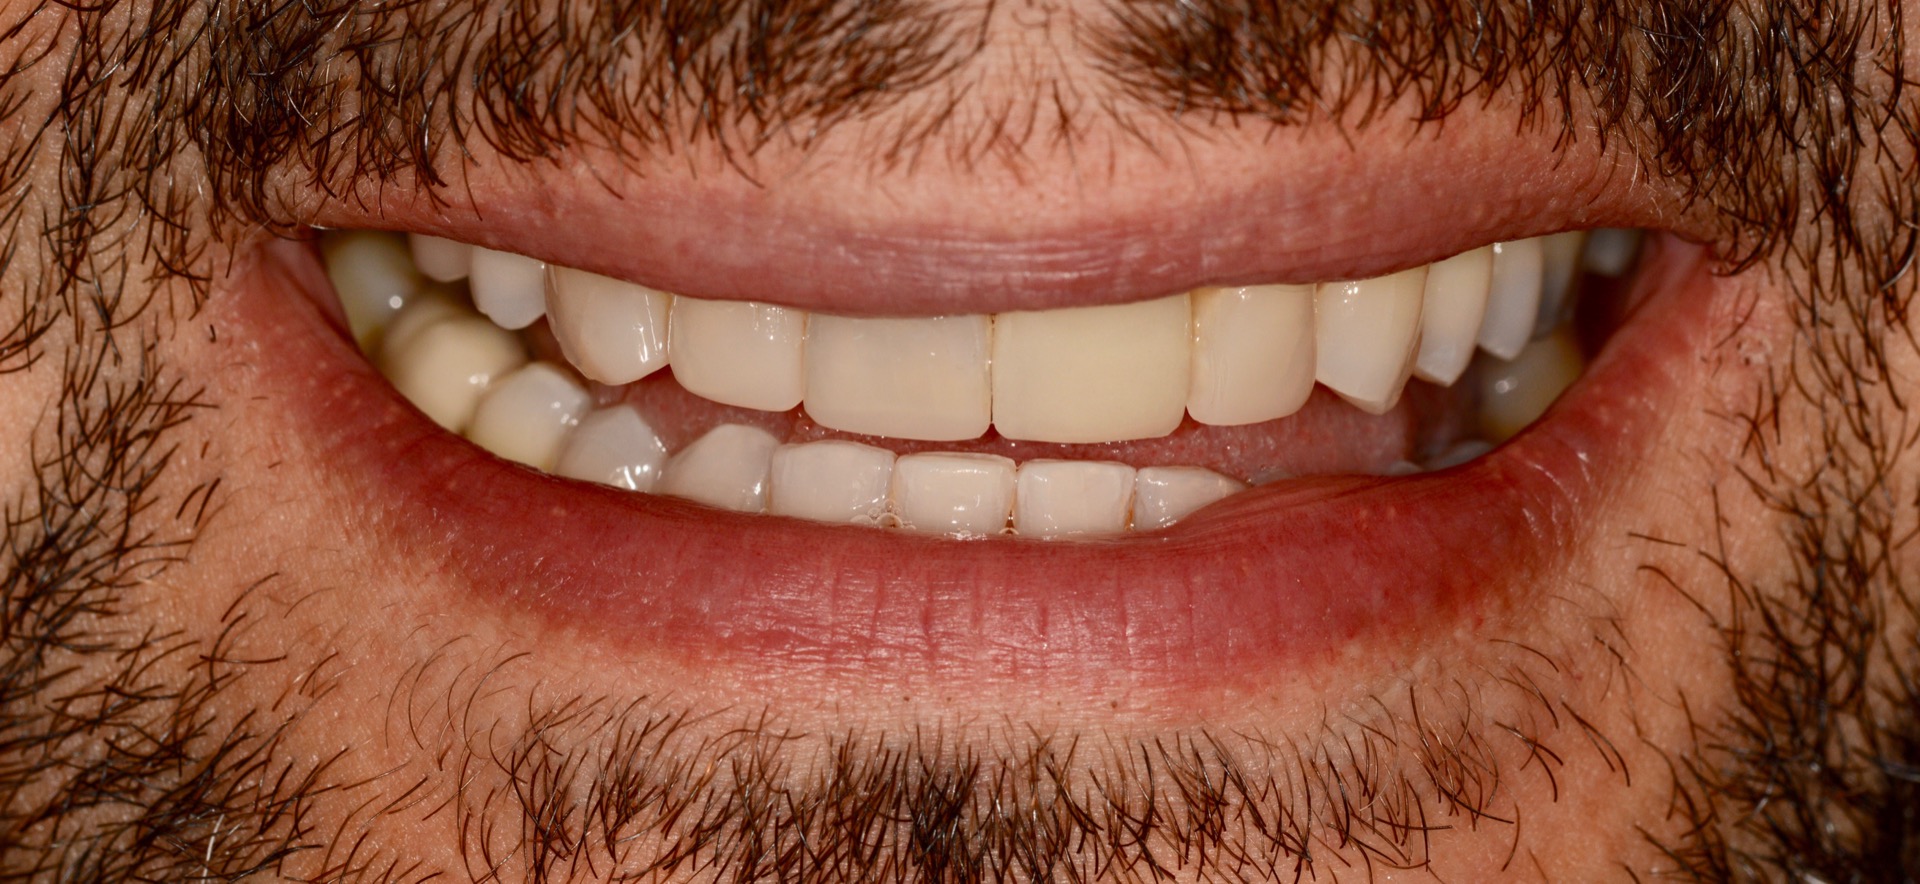 Τελική κατάσταση - Χαμόγελο - Η τελική στεφάνη διπυριτικού λιθίου τοποθετημένη στο στόμα.